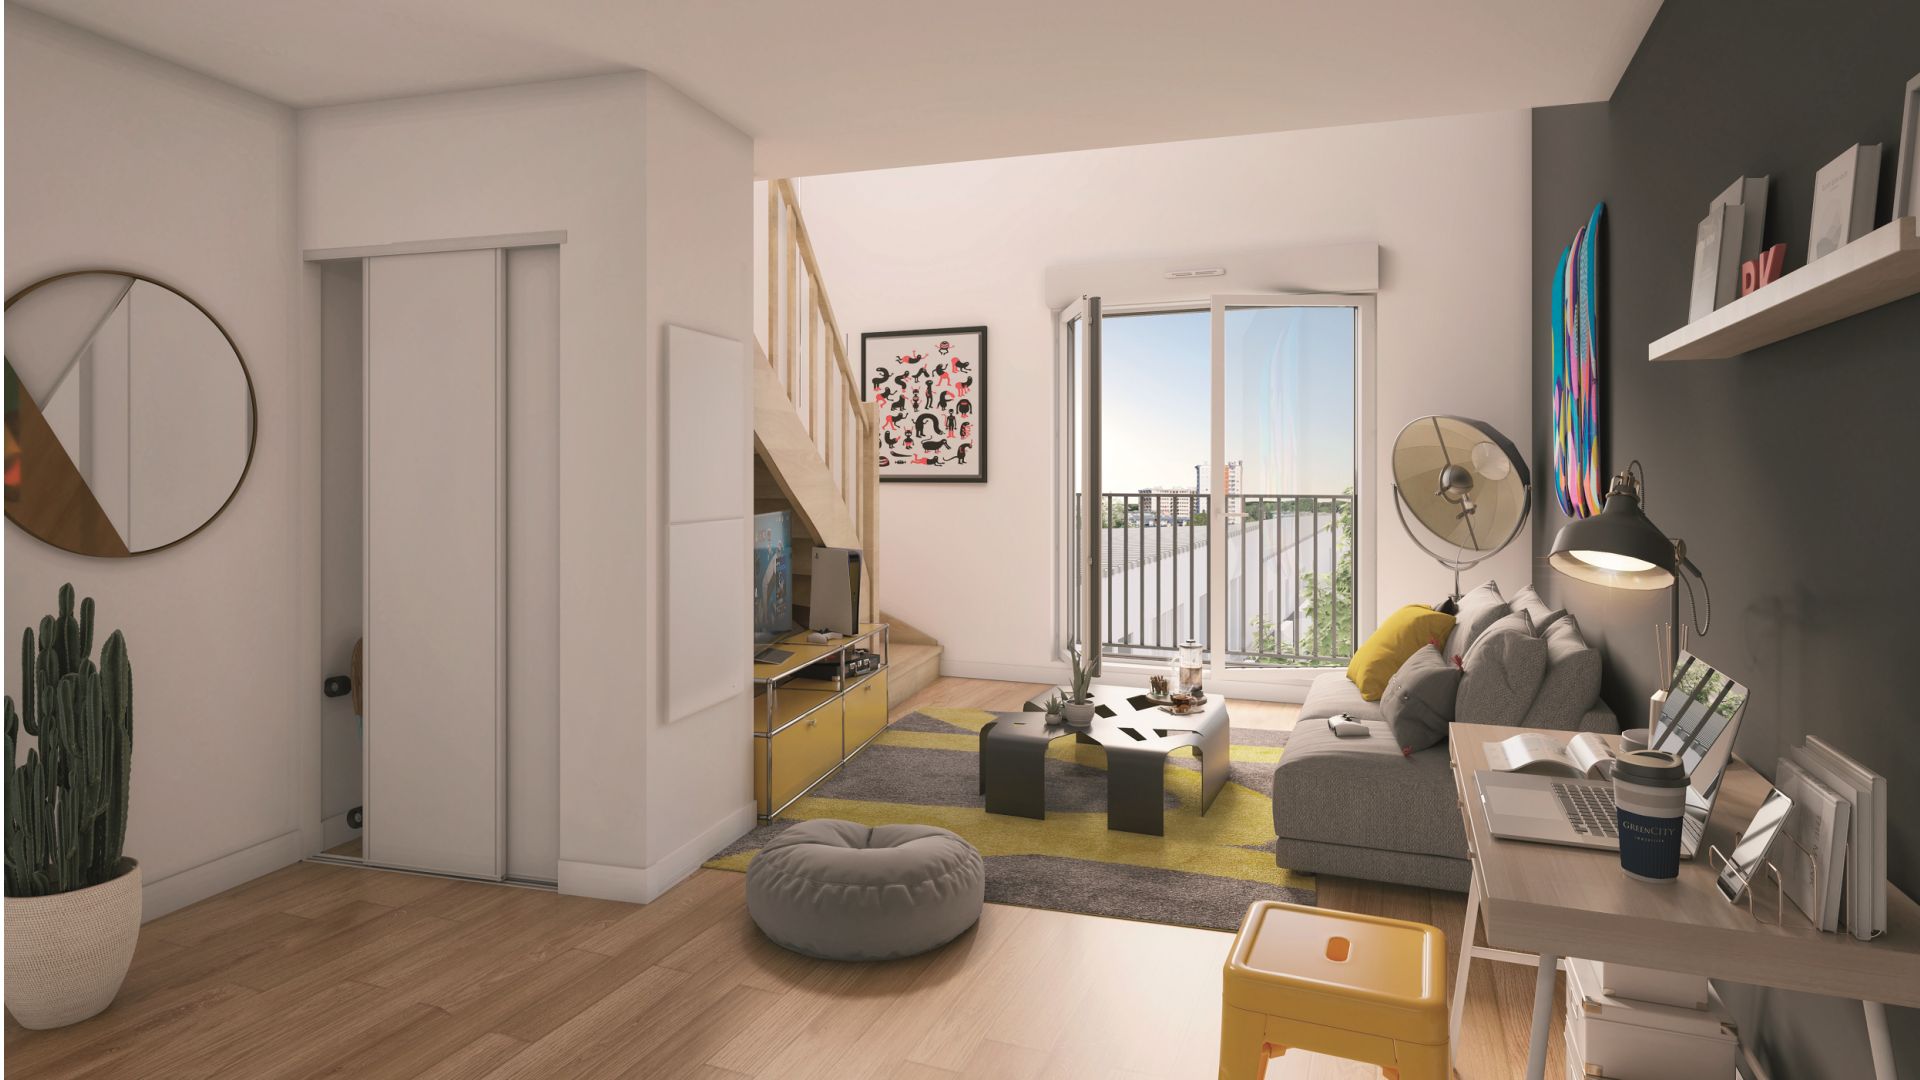 Greencity immobilier - achat appartements neufs du T1 au T2 - Résidence co-living - Résidence Le Washington - 51000 Reims 